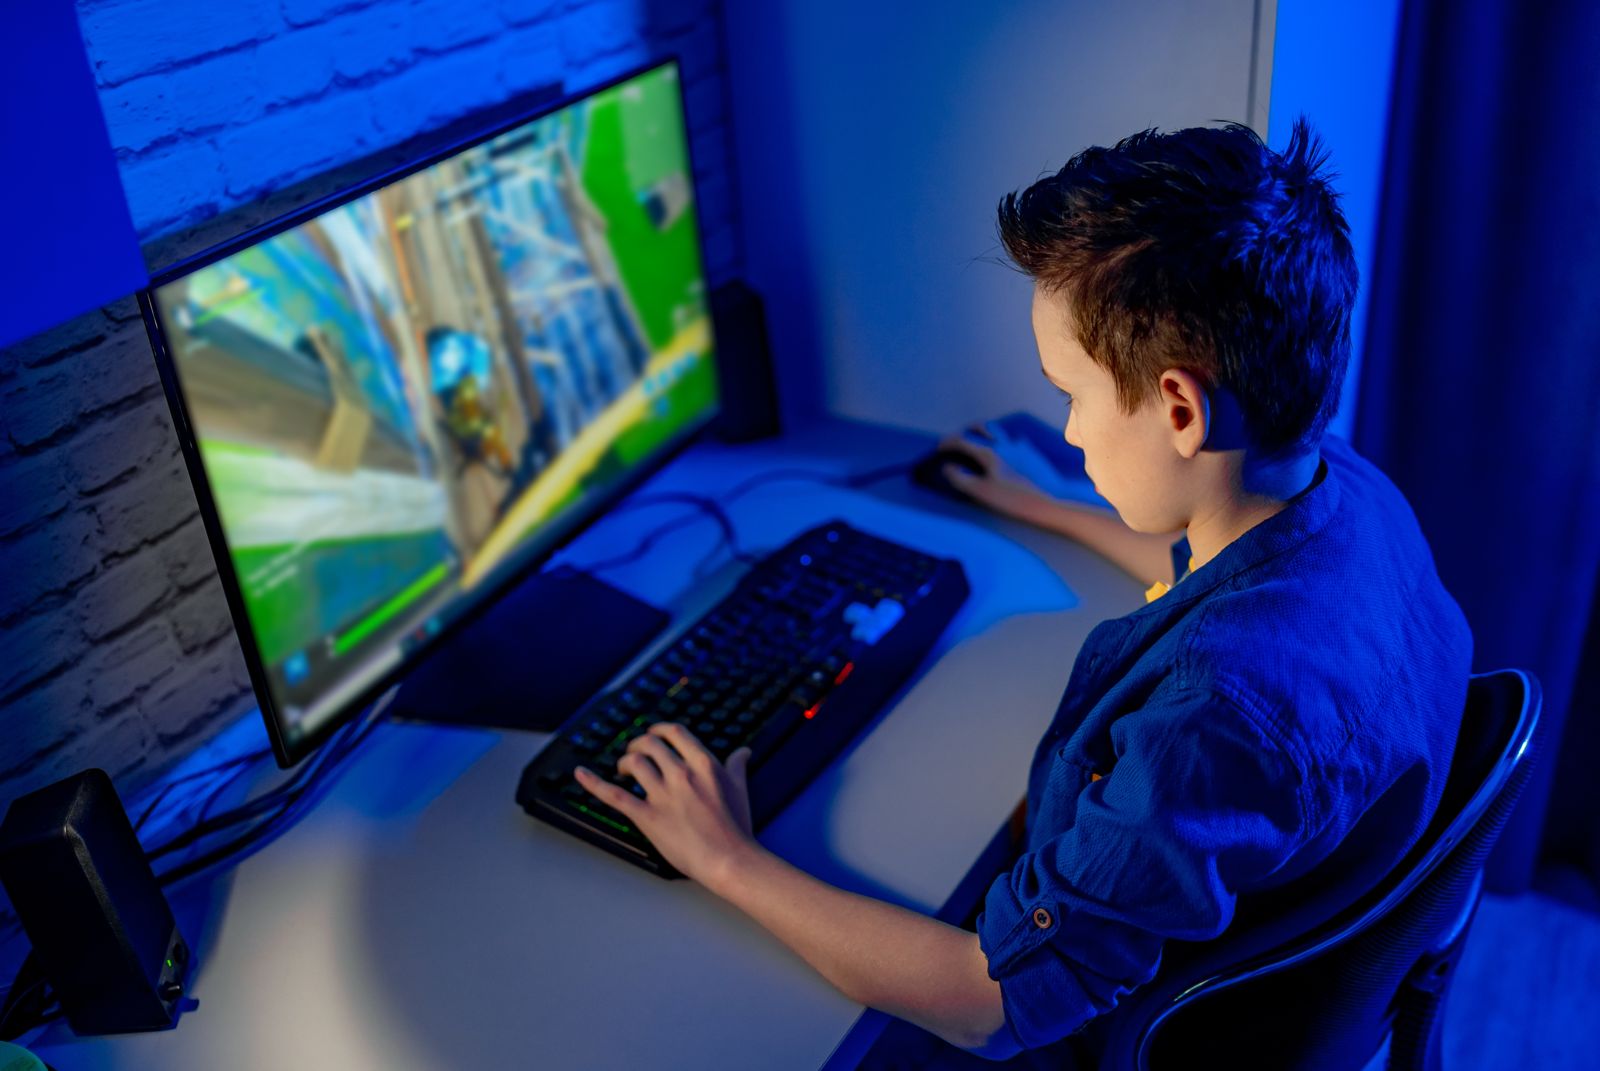 Imagem mostra diversos games rodando no computador de um menino